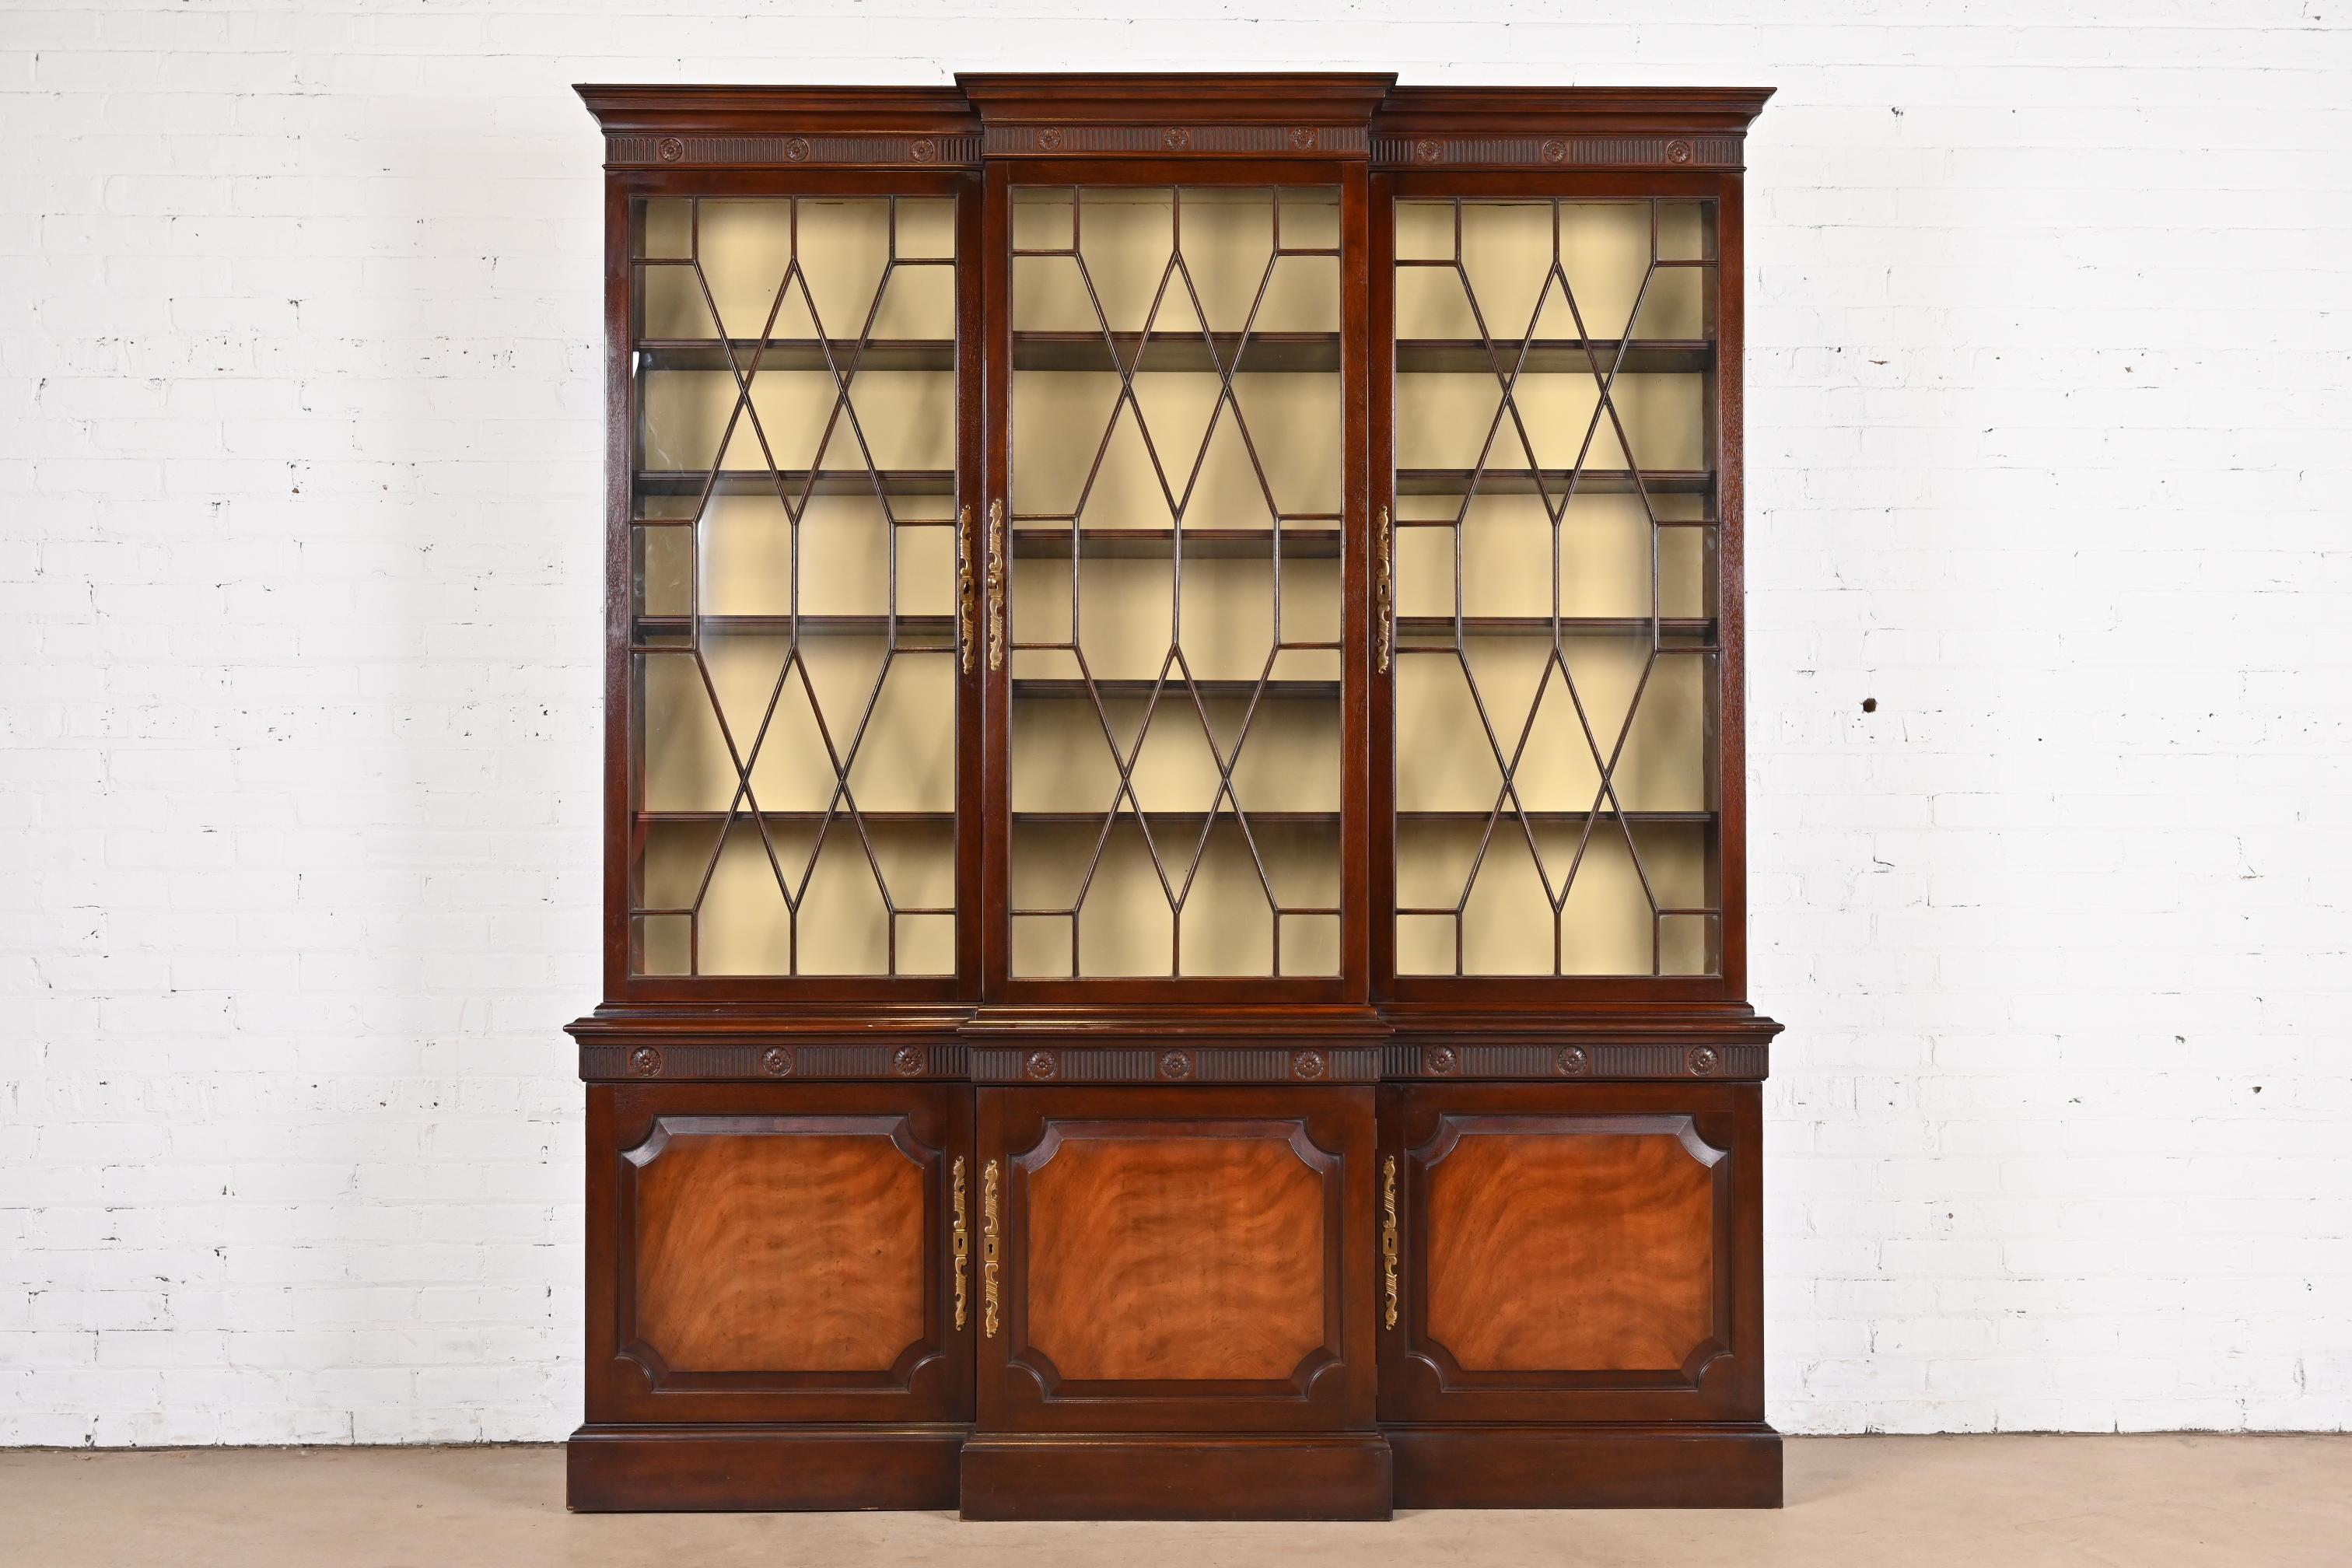 Magnifique bibliothèque ou meuble de salle à manger de style géorgien ou Chippendale.

Par Baker Furniture

USA, Circa 1960

Acajou sculpté, portes avant en verre à meneaux, ferrures en laiton d'origine. L'armoire se verrouille et la clé est